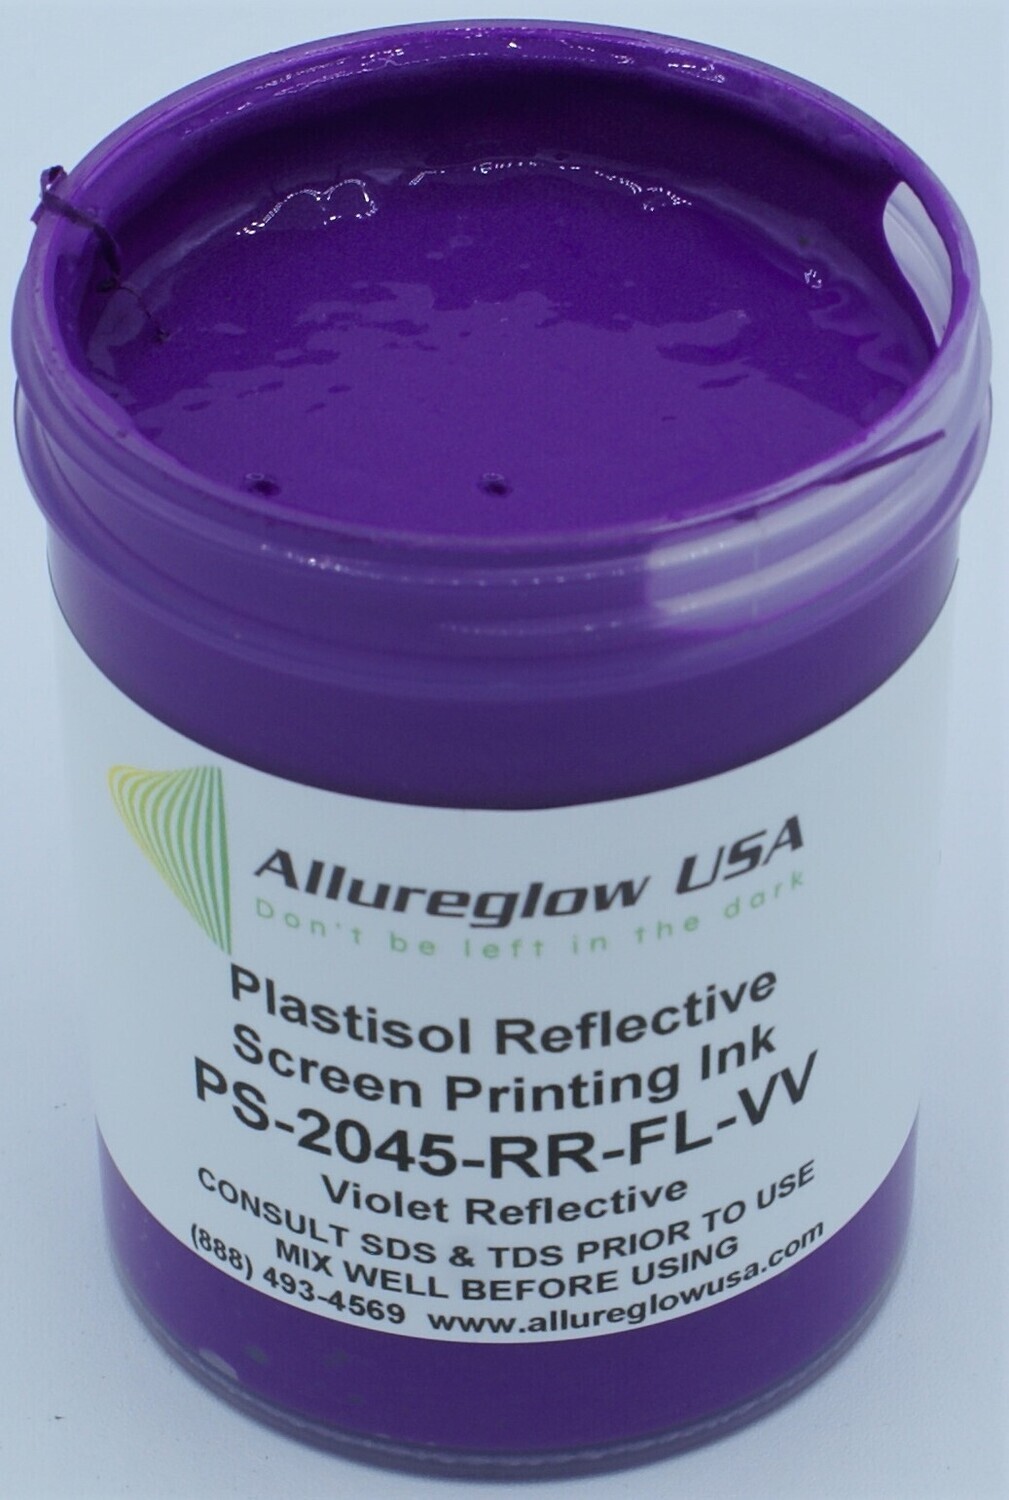 PS-2045-RR-FL-VV-8OZ  PLASTISOL FLUORESCENT VIOLET REFLECTIVE INK 8OZ